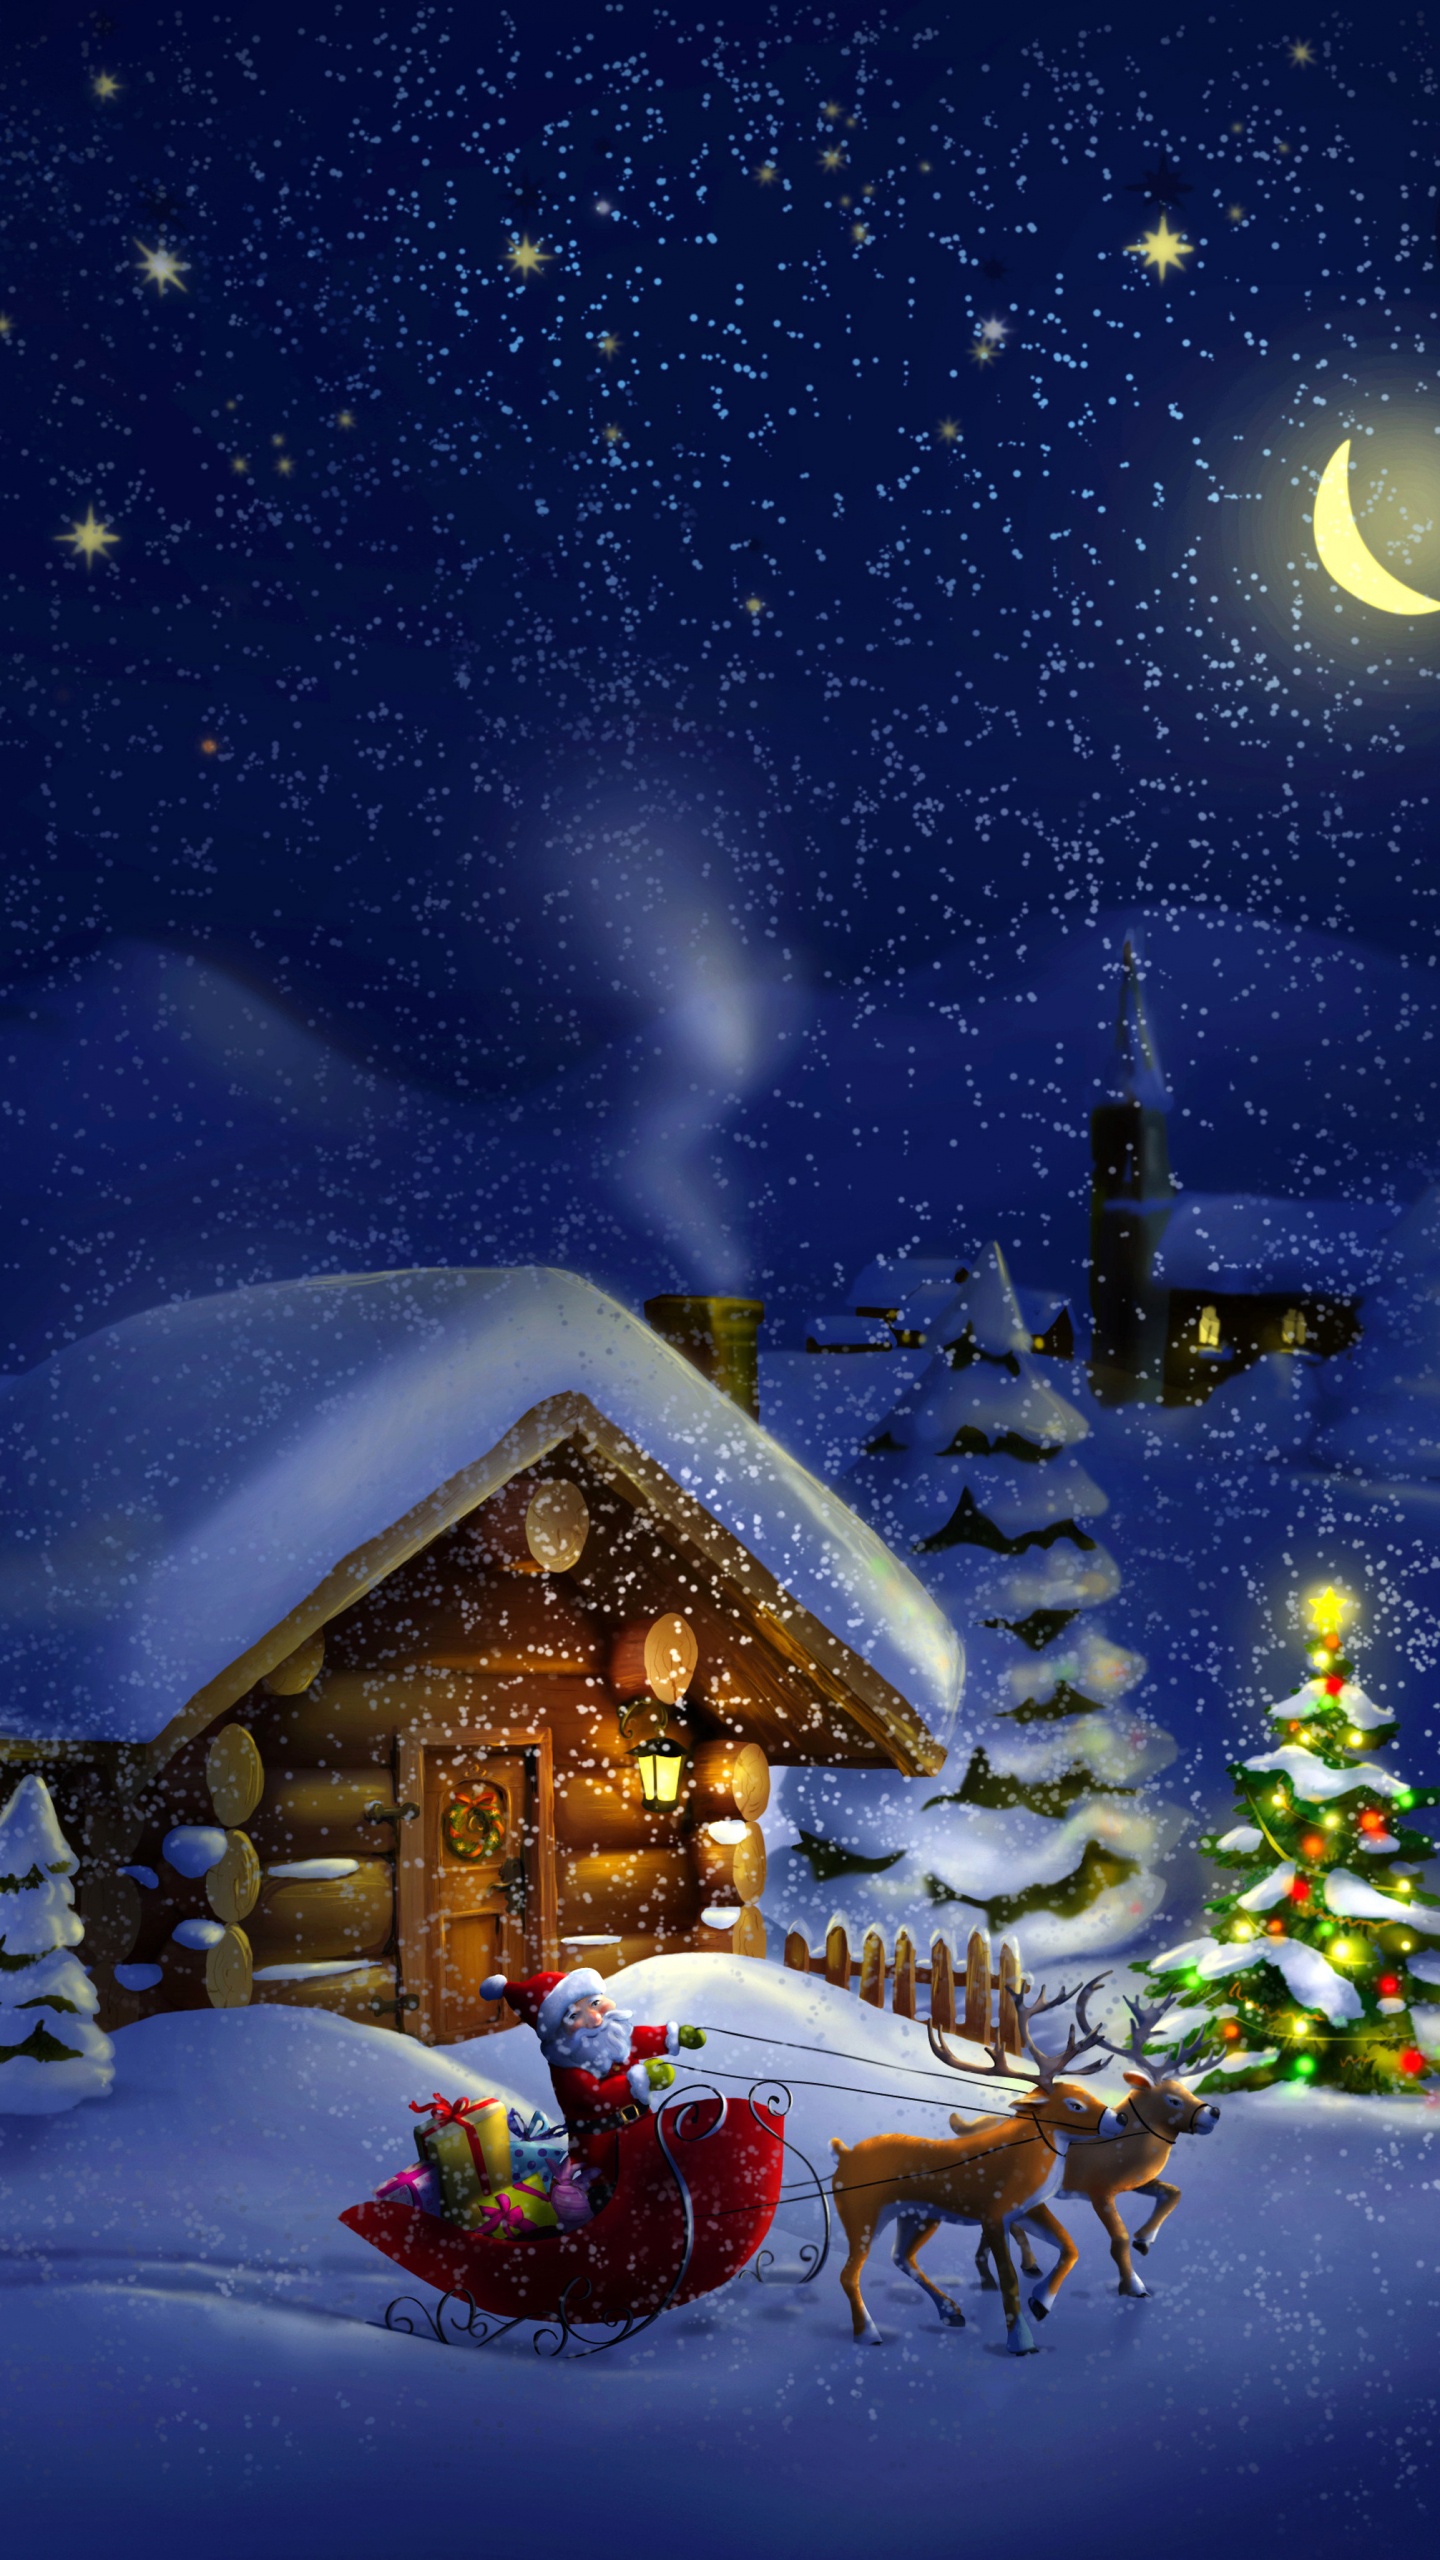 Le Jour De Noël, Santa Claus, Hiver, Neige, Nuit. Wallpaper in 1440x2560 Resolution